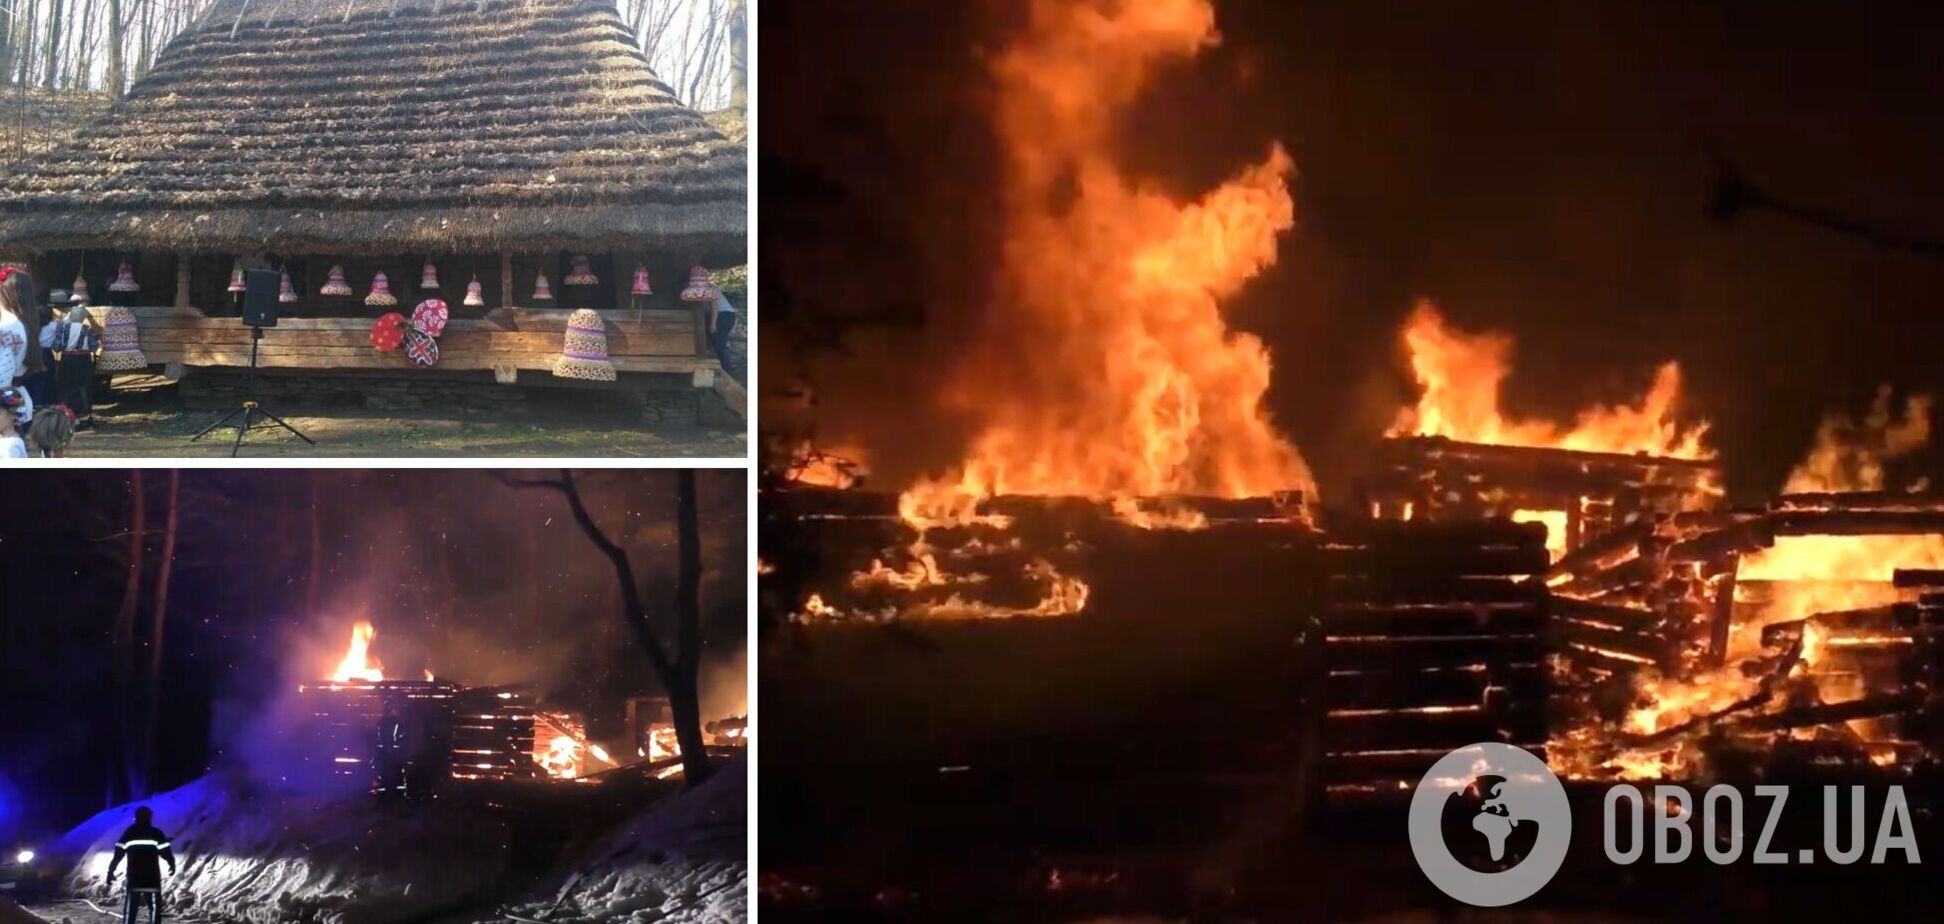 У Львові трапилася пожежа в музеї 'Шевченківський гай': вогонь знищив дерев'яний будинок. Відео